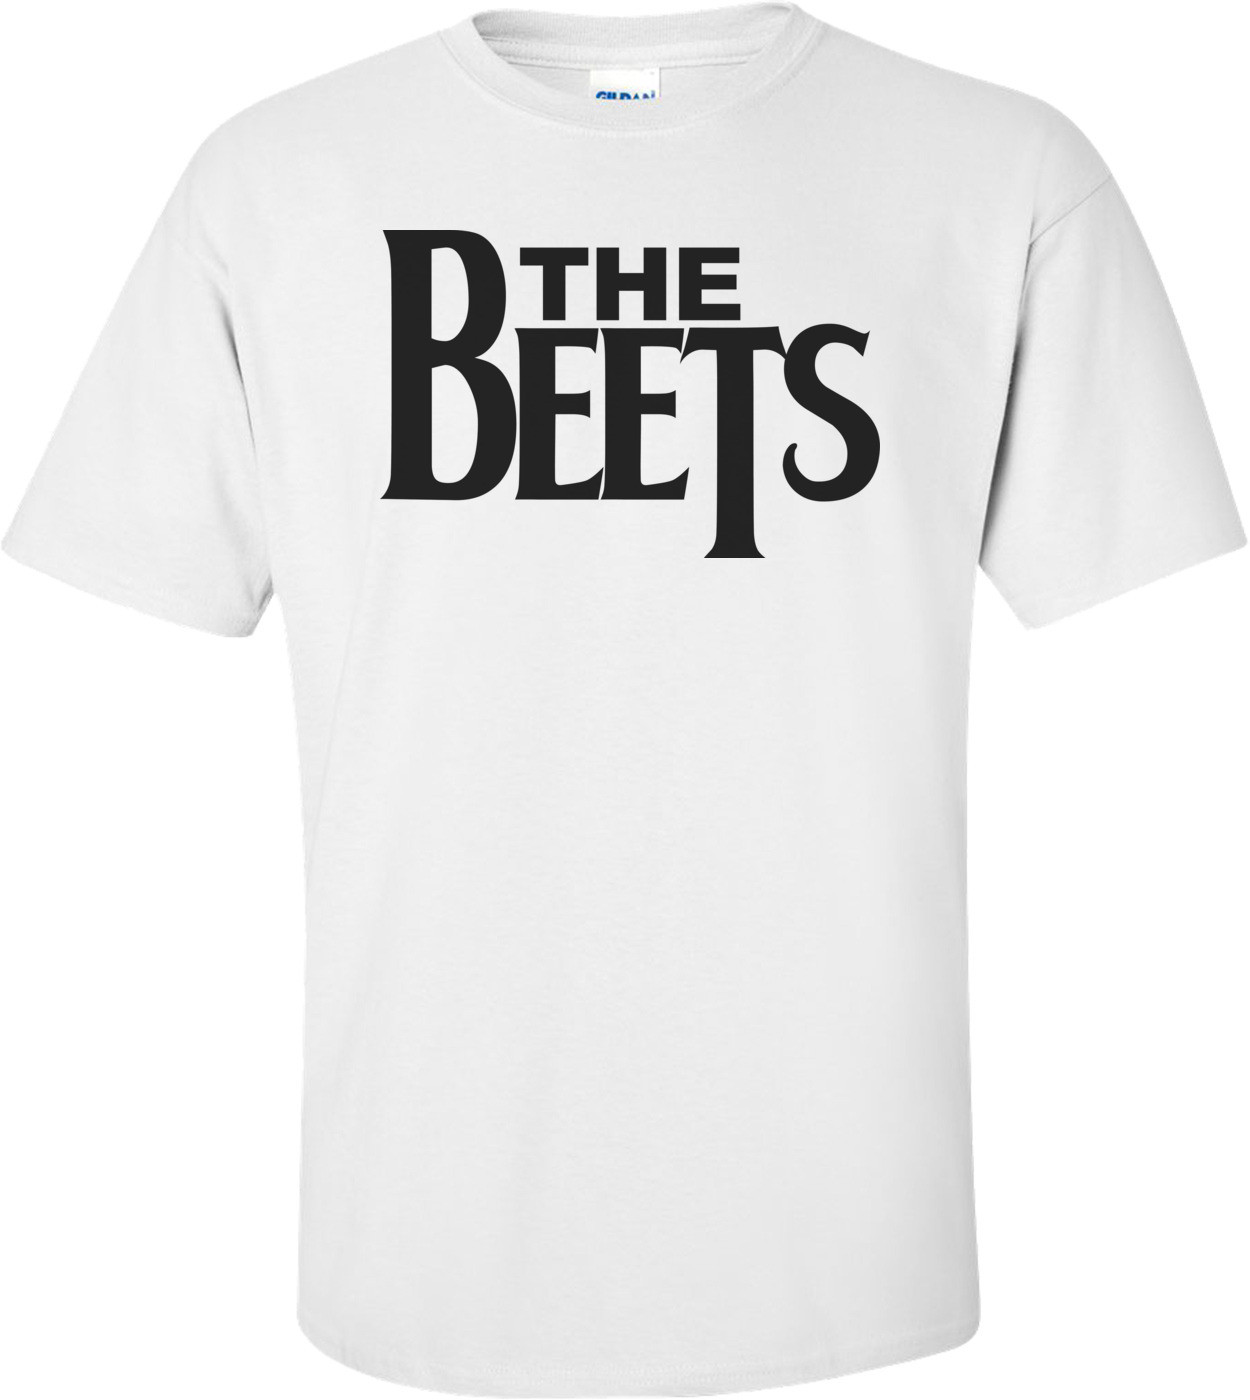 The Beets - Doug